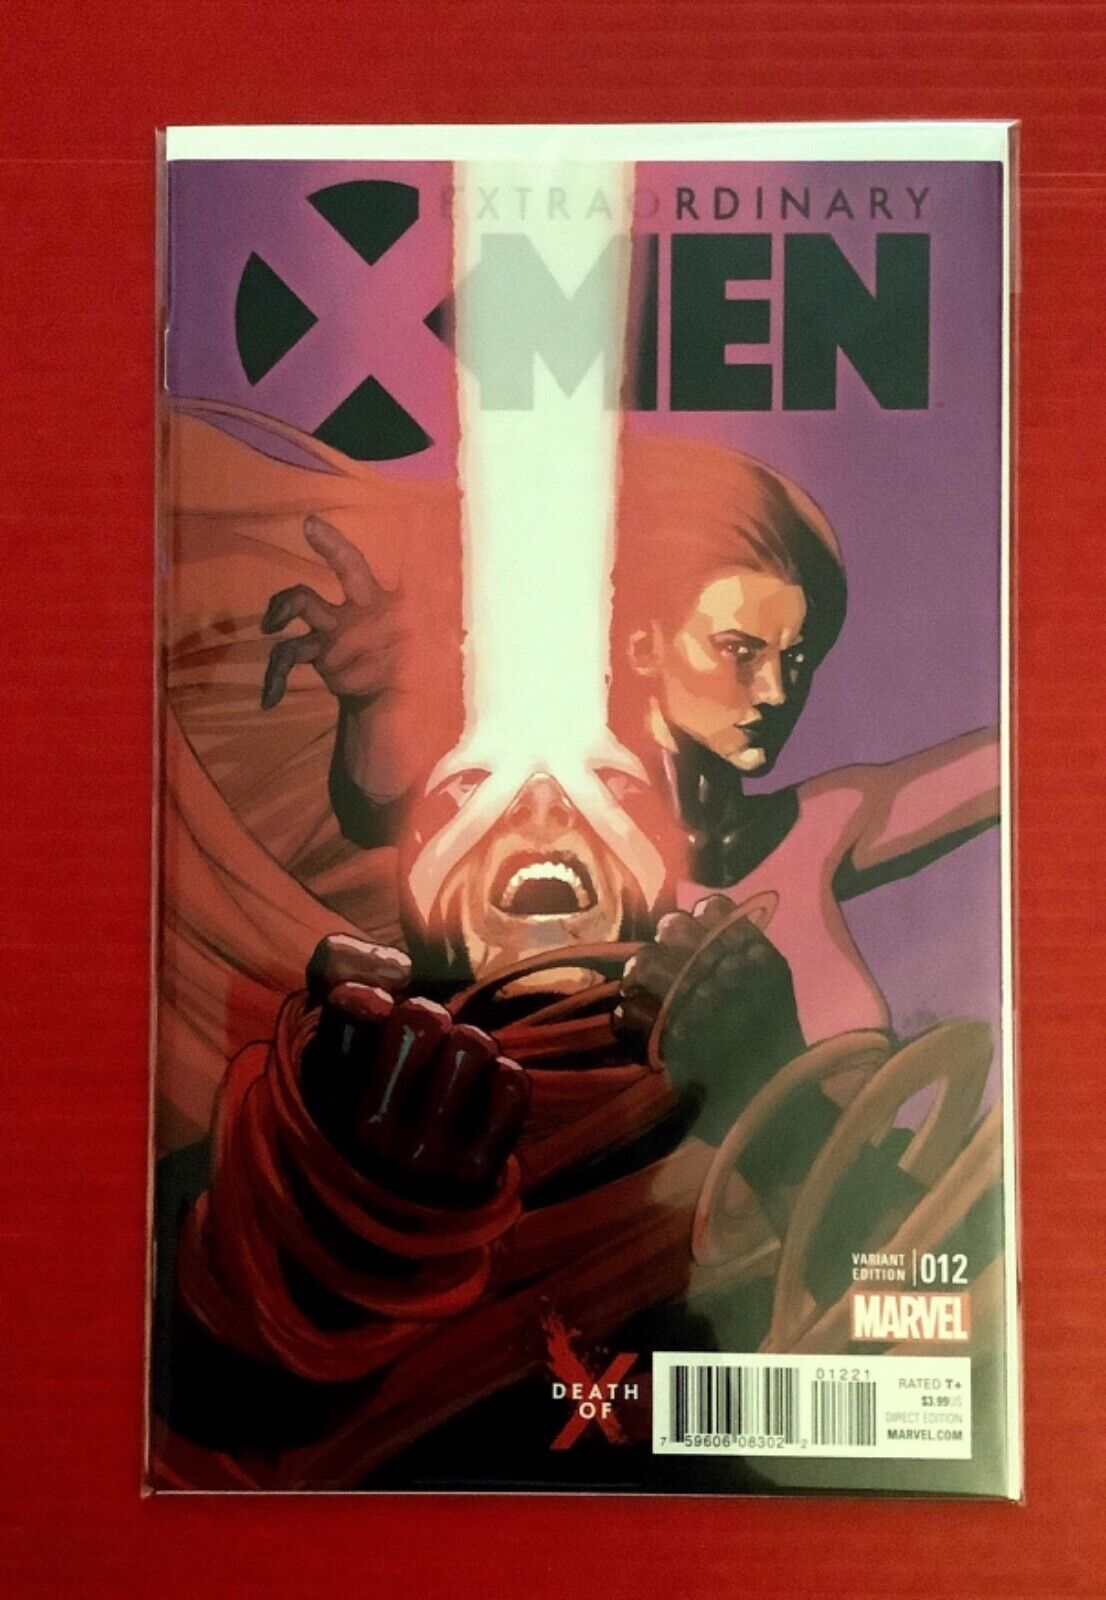 EXTRAORDINARY X-MEN #12 VARIANT COVER NEAR MINT BUY TODAY AT RAINBOW COMICS